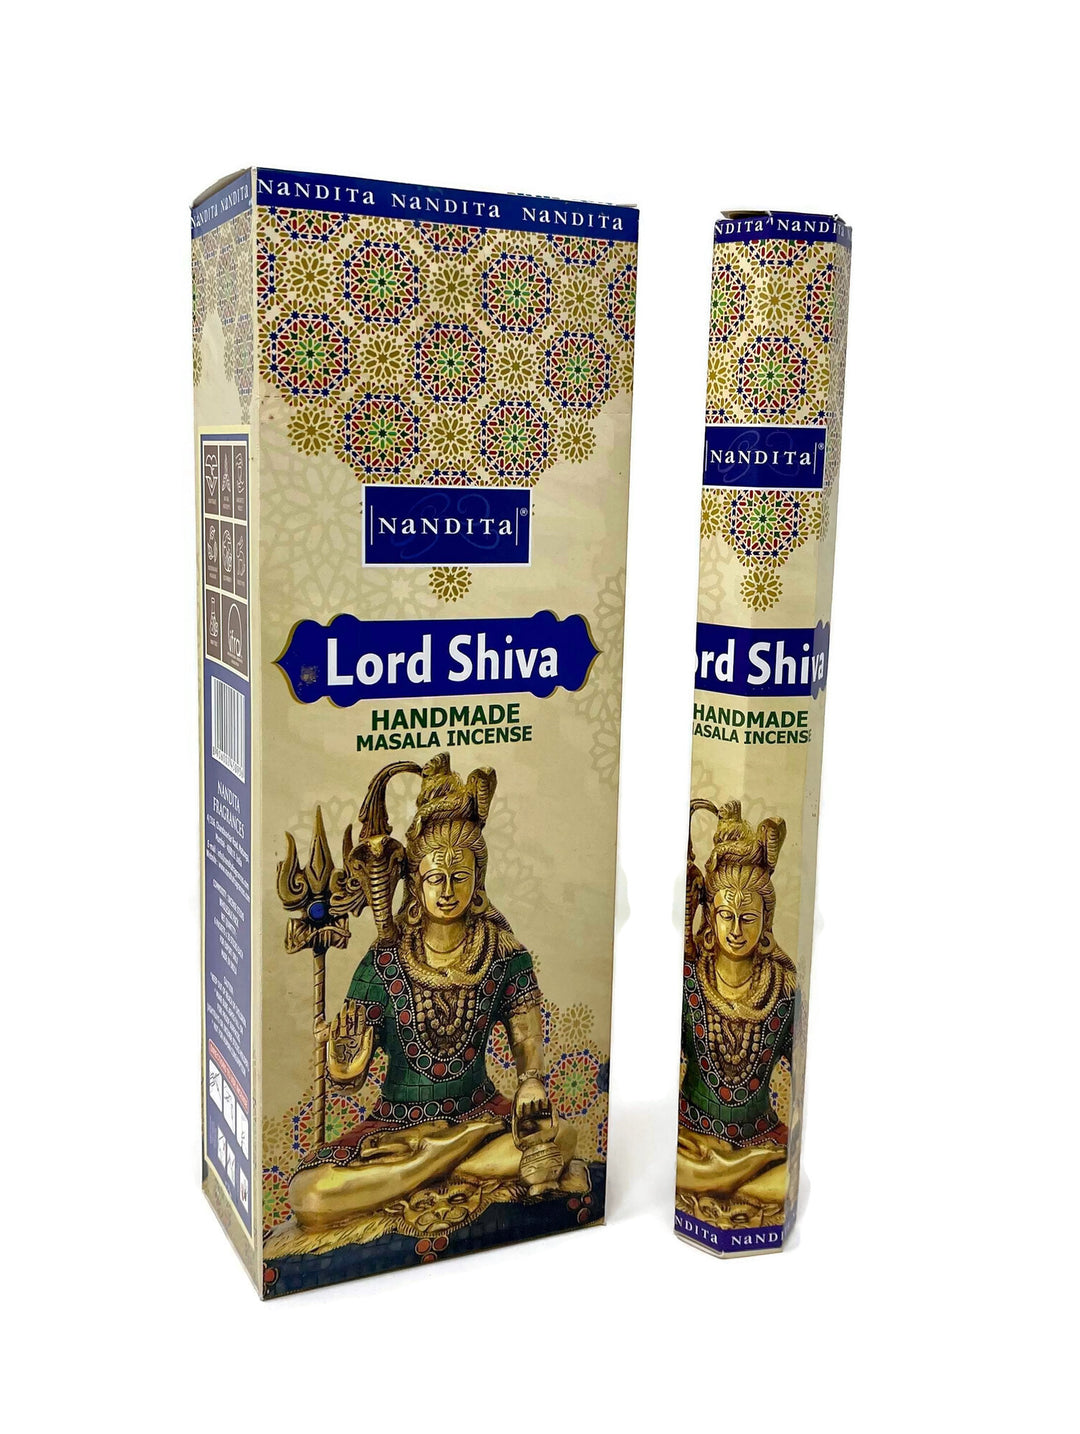 Nandita Masala Incense Sticks- Lord Shiva - 6 HEXA Tubes - Total 120 Sticks